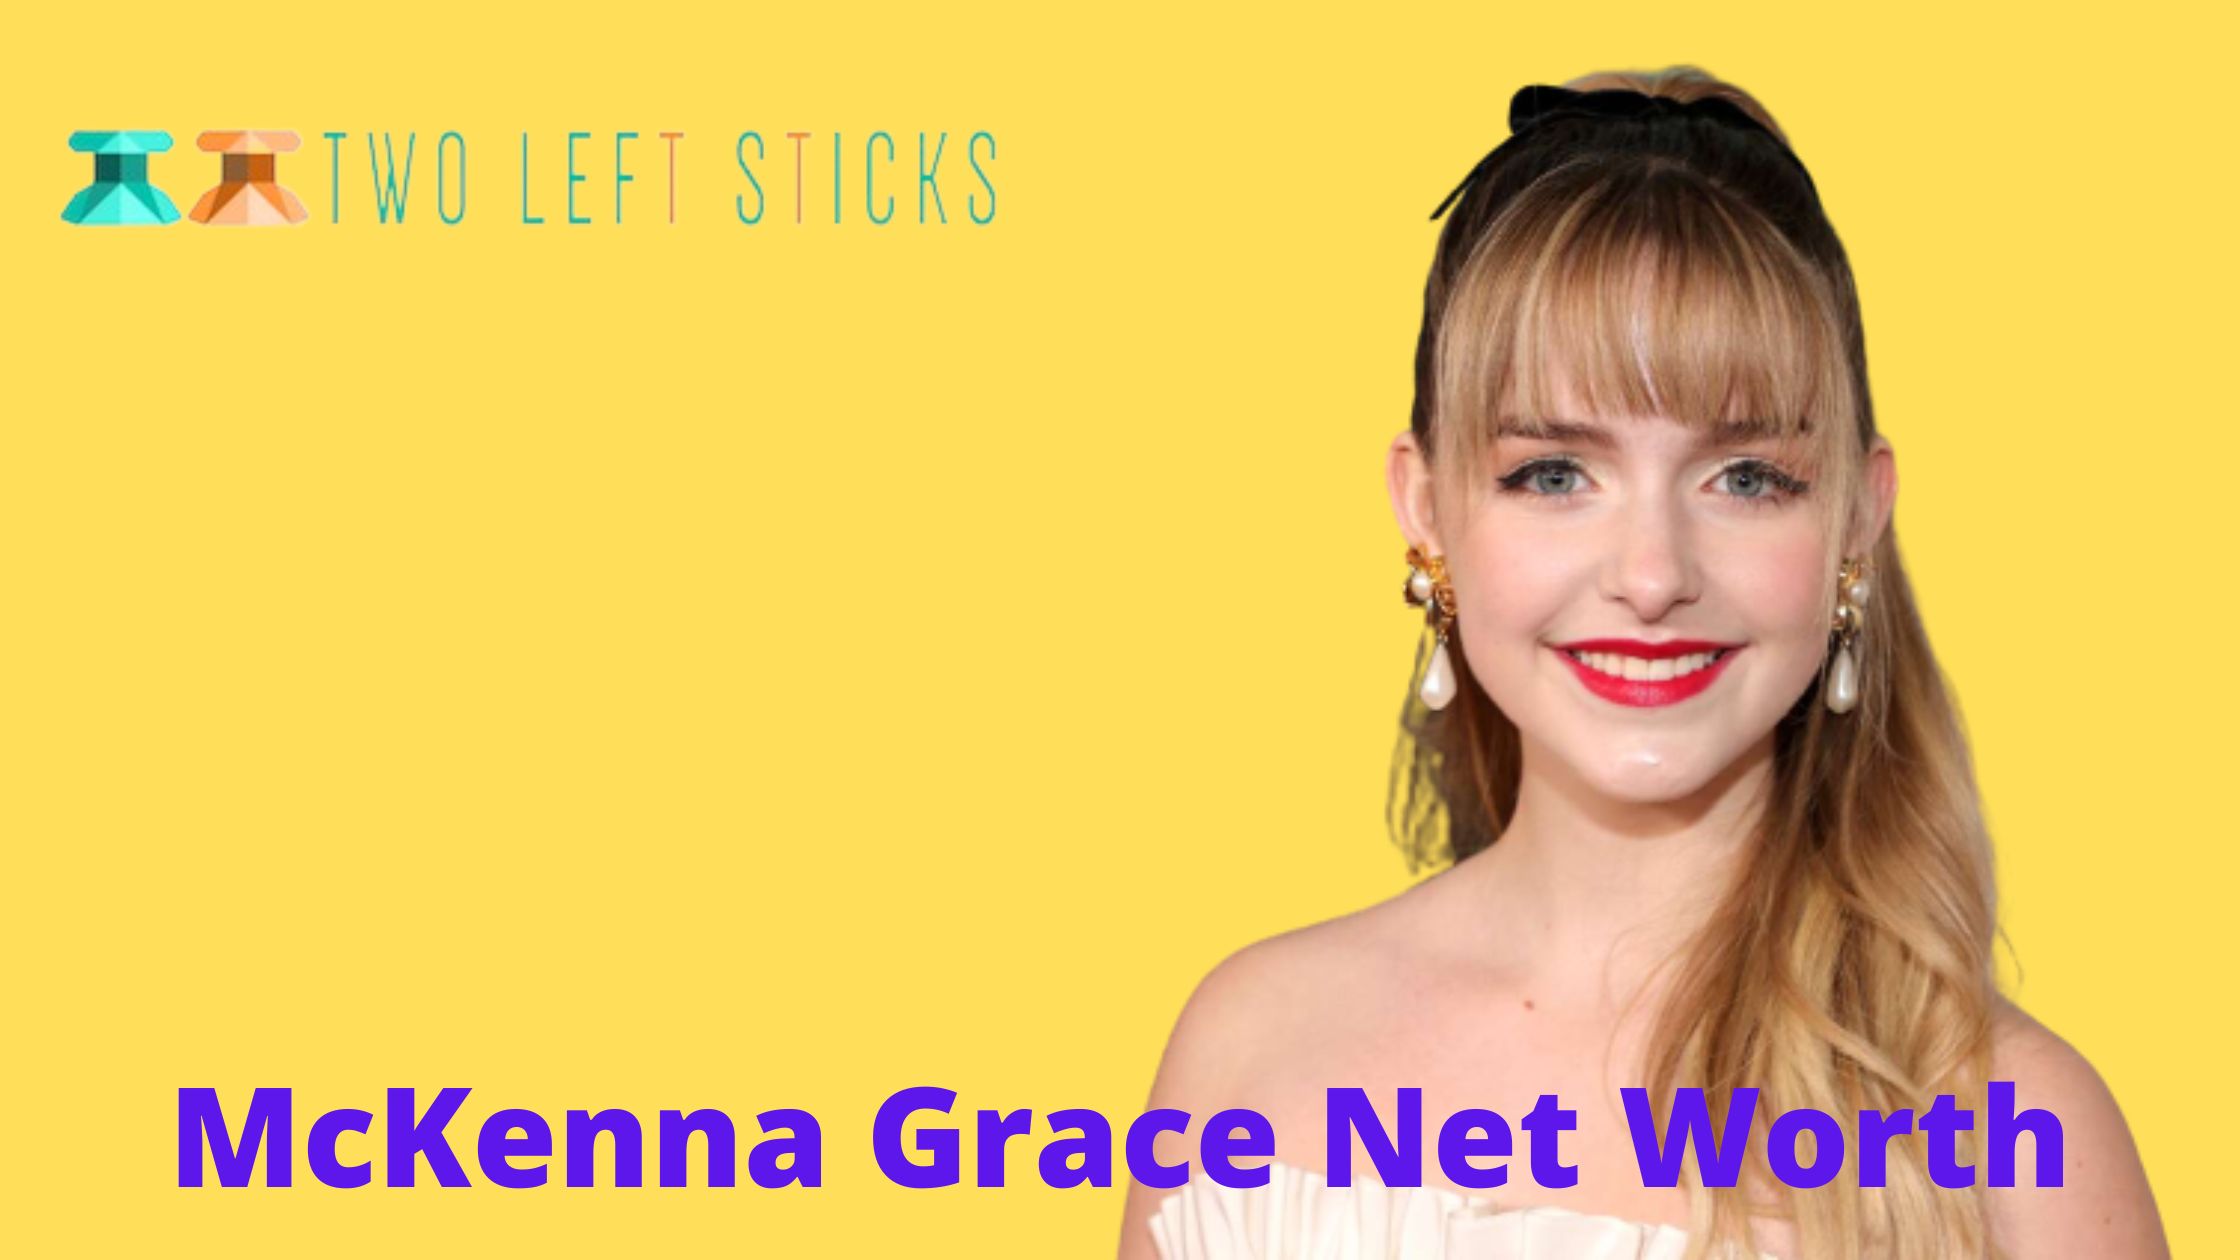 McKenna-Grace-Net-Worth-twoleftsticks(1)